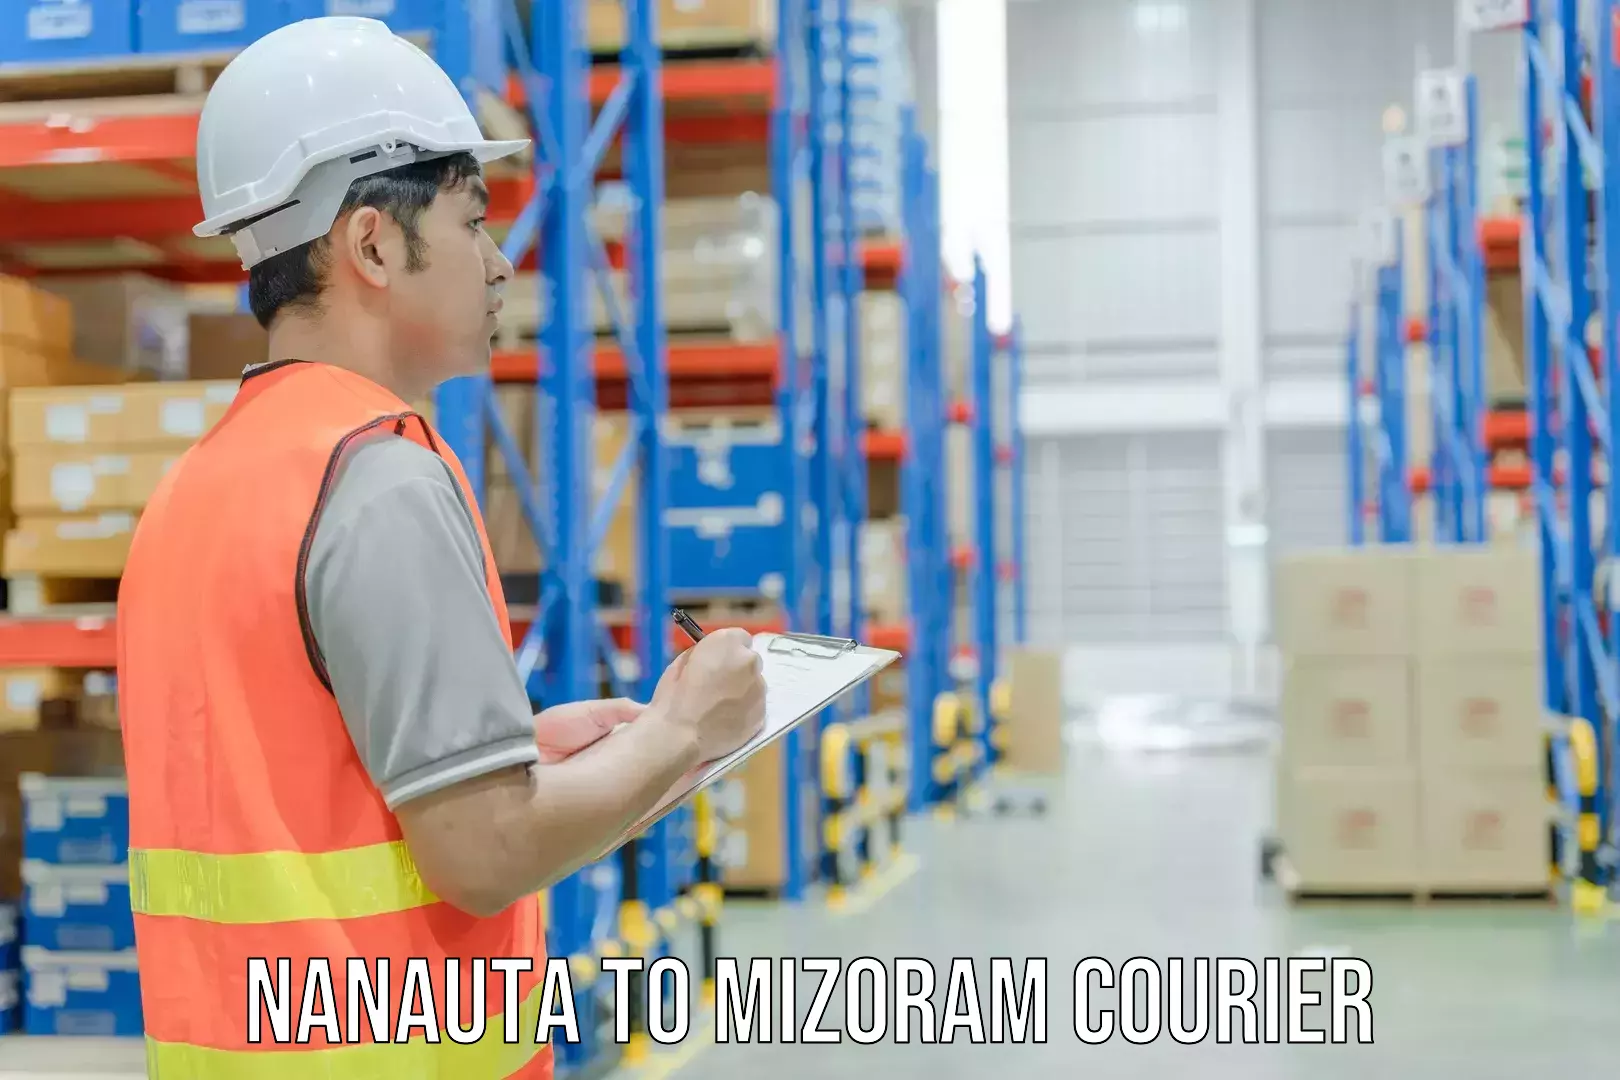 Residential courier service Nanauta to Saitual